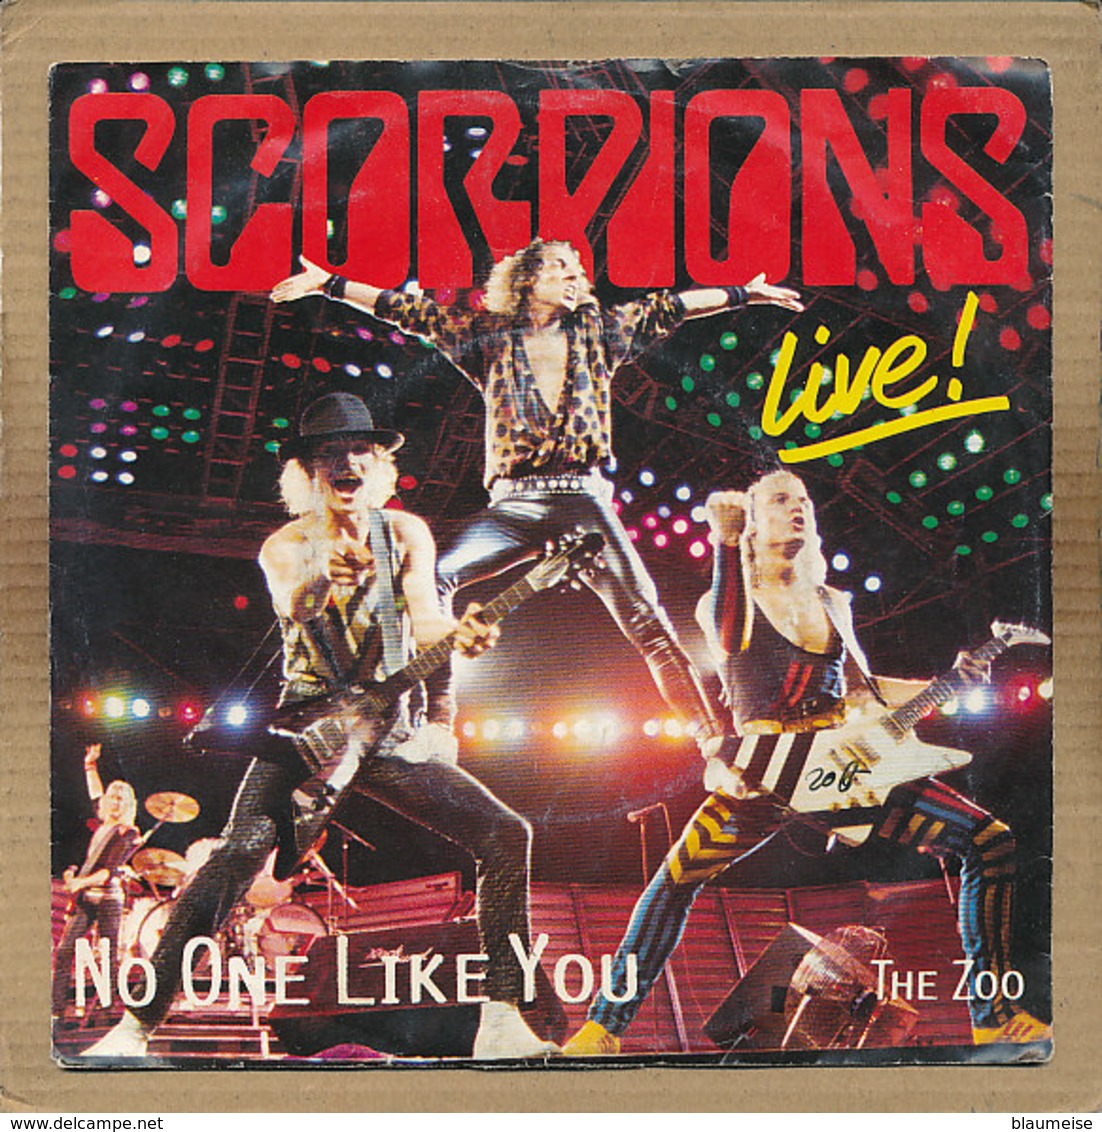 7" Single, Scorpions - No One Like You (live) - Disco, Pop